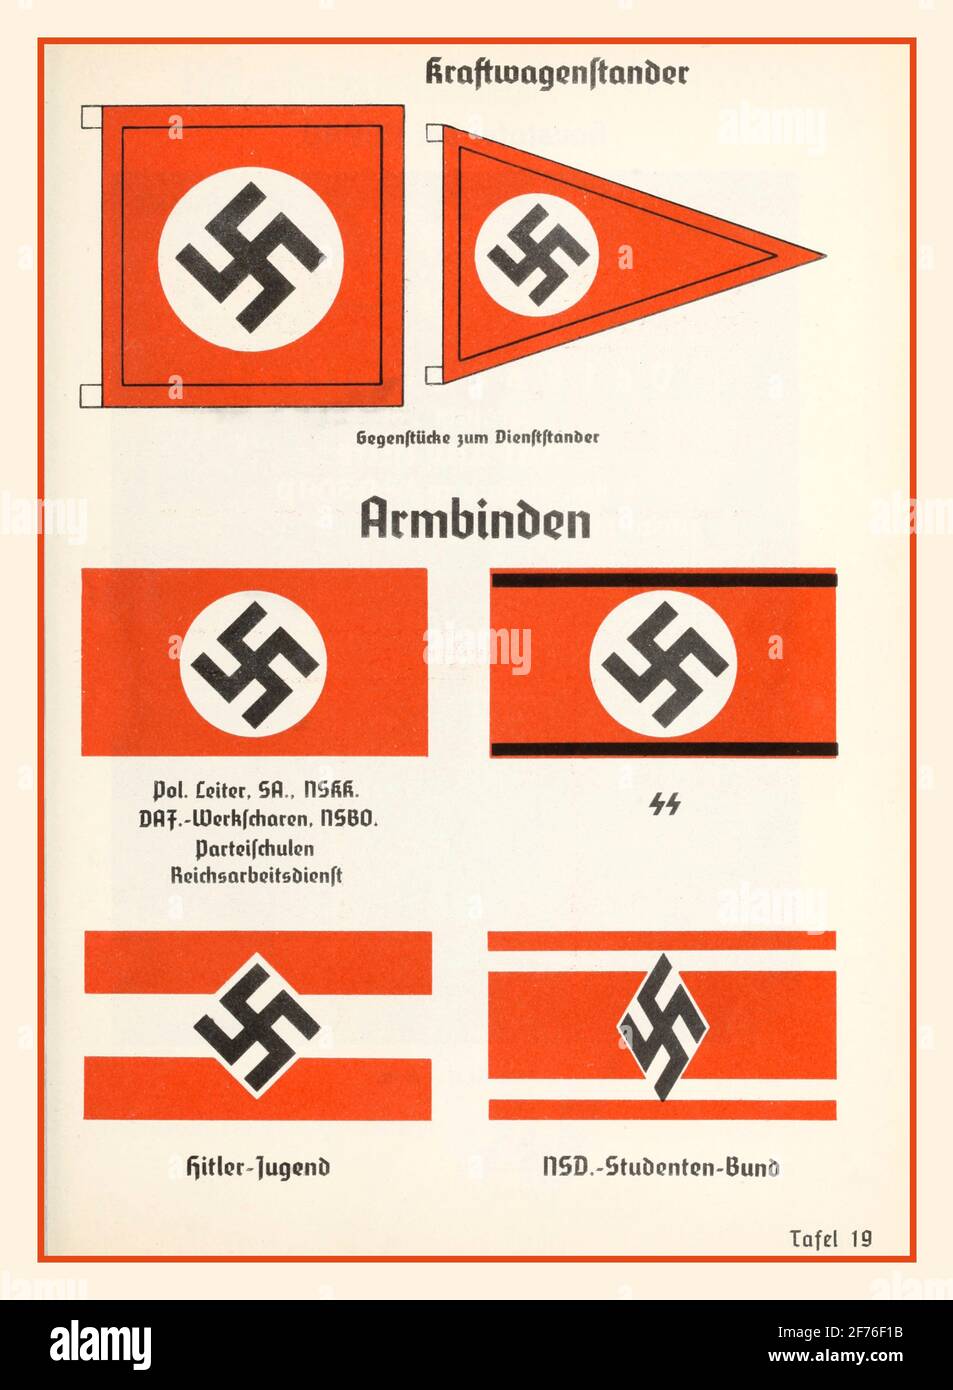 Illustrazione ufficiale della Swastika nazista dal manuale del Partito nazista 1936, che mostra bandiere, emblemi, segni, distintivi, Ranghi, insegne, uniformi, ecc.:bandiere di automobili bande armate di Swastika (brassards) leader politici (Politischer Leiter), SA (Sturmabteilung), National Socialist Motor Corps (NSKK, Nationalsozialistisches Kraftfahrkorps), German Labour Front (DAF.-Wehrscharen, Deutsche Arbeitssen, Nassel, Nassel, Nassel, Nassel, Nassel, Nassel, Nassel, Nassel, Nassel, Nassel, Nassel, Nassel, Nassel, Nassel, Nassel, Nassel, Nassel, Nassel, Nassel, Nassel, Nassel, Nassel, R Germania Foto Stock